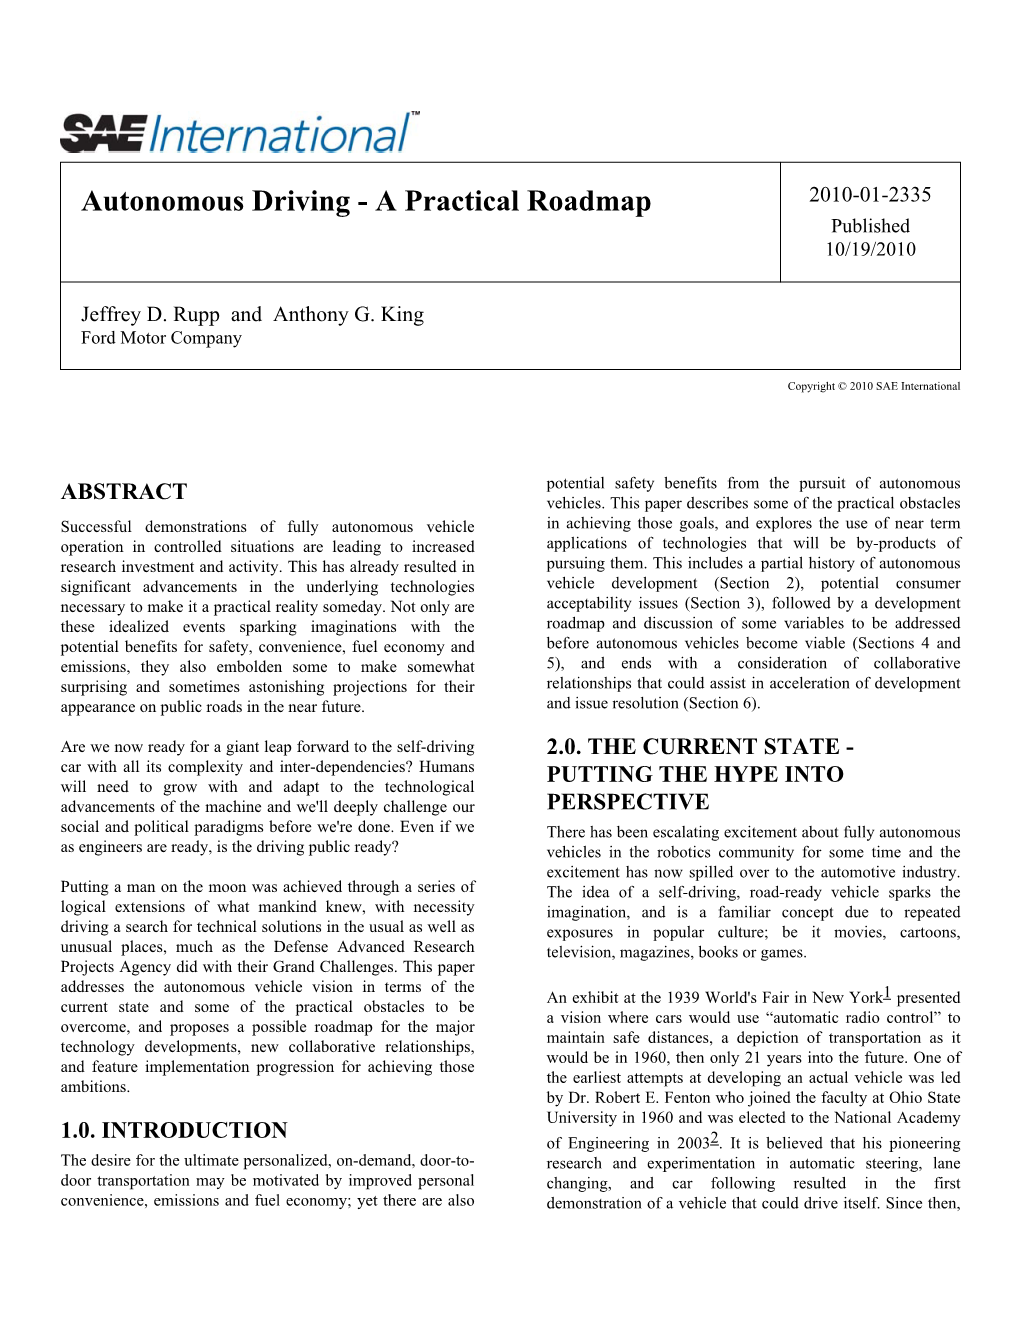 Autonomous Driving - a Practical Roadmap 2010-01-2335 Published 10/19/2010